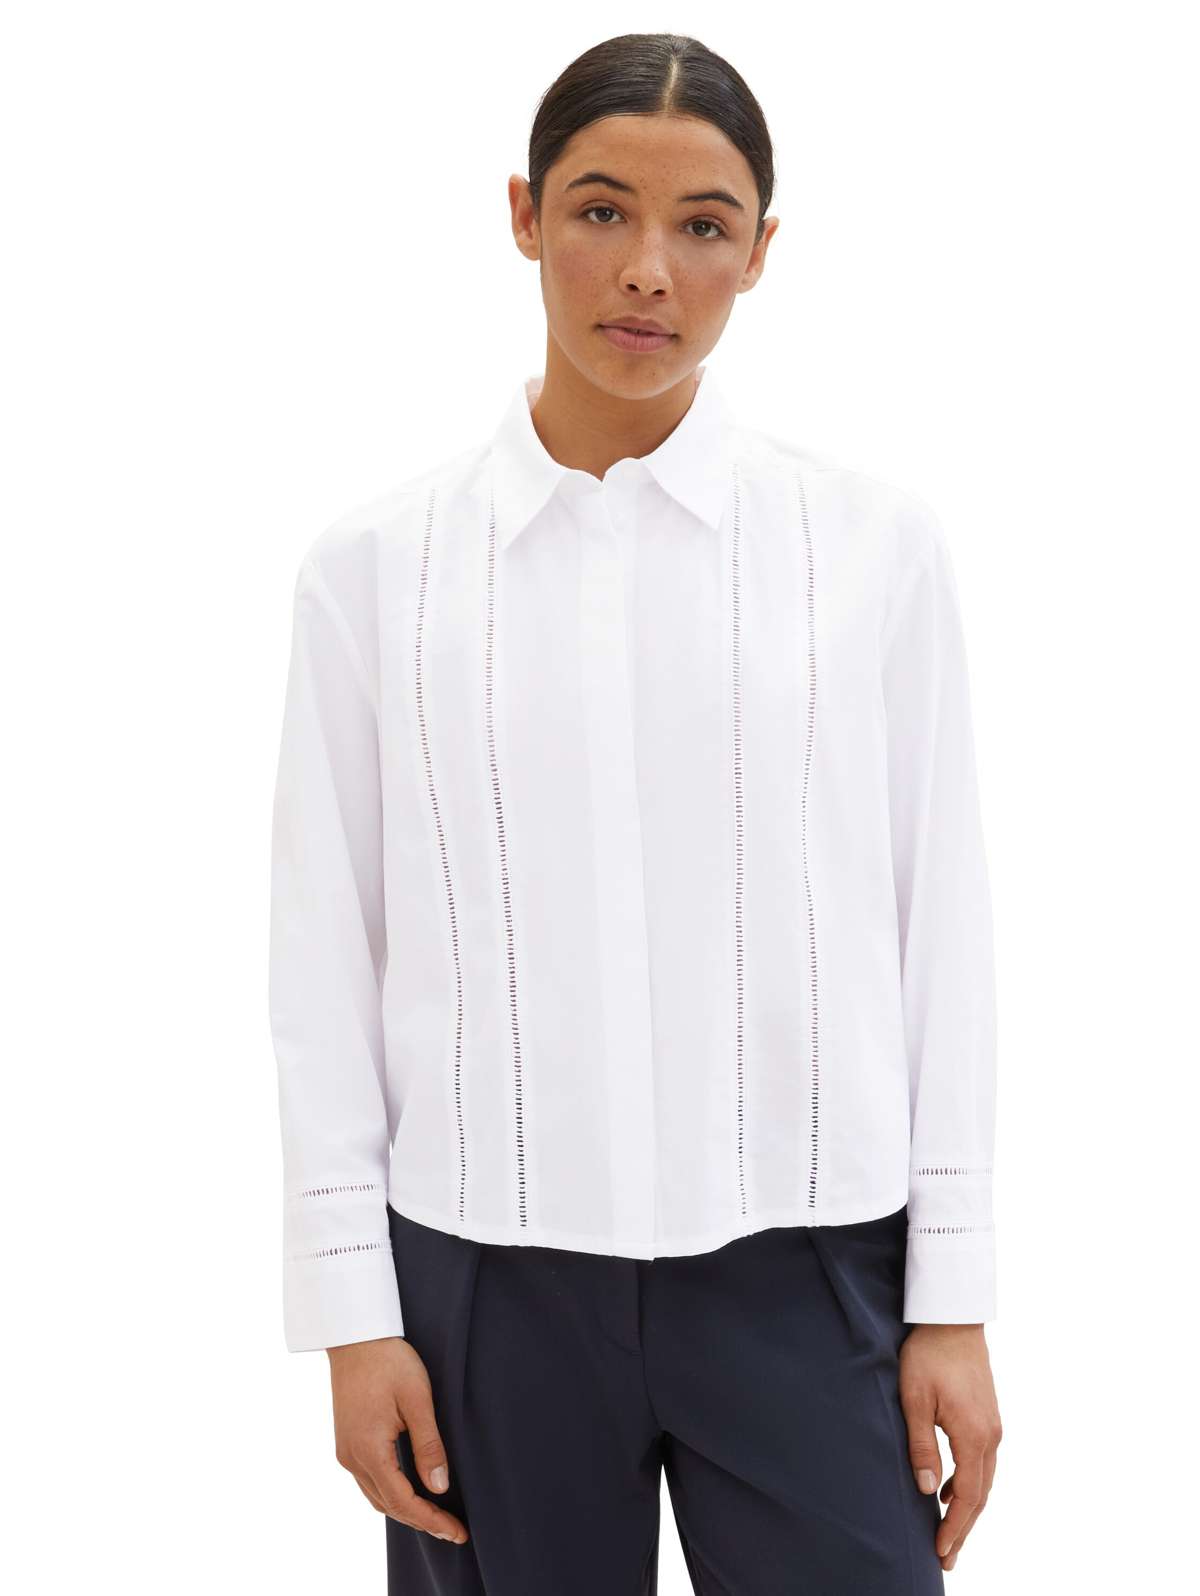 Блузка с длинными рукавами и минимальным рисунком отверстий.